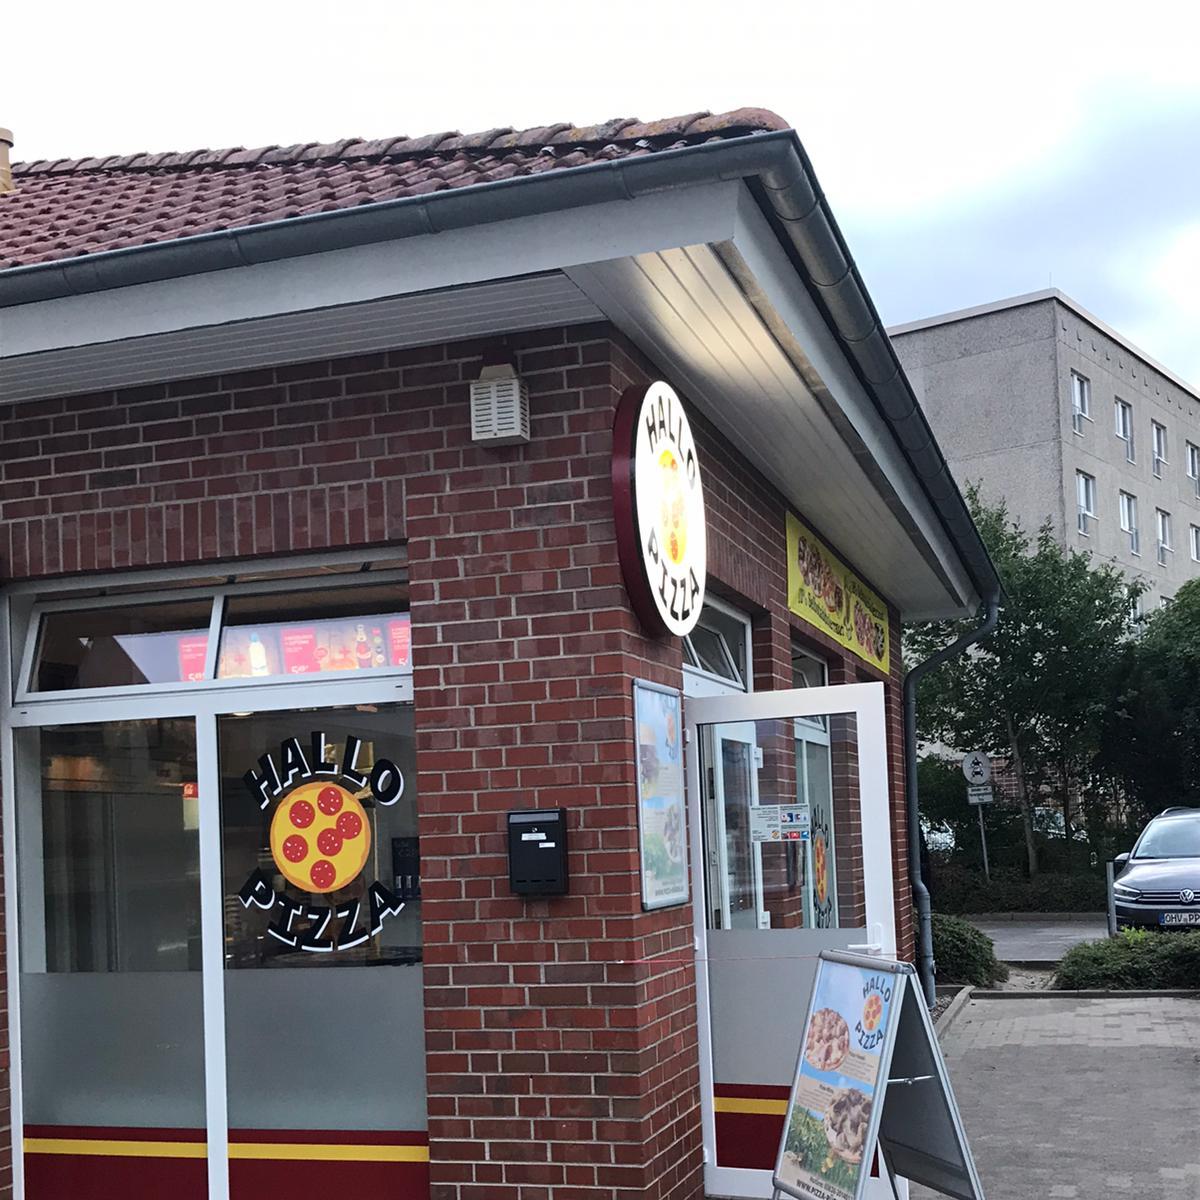 Restaurant "Hallo Pizza" in Bergen auf Rügen